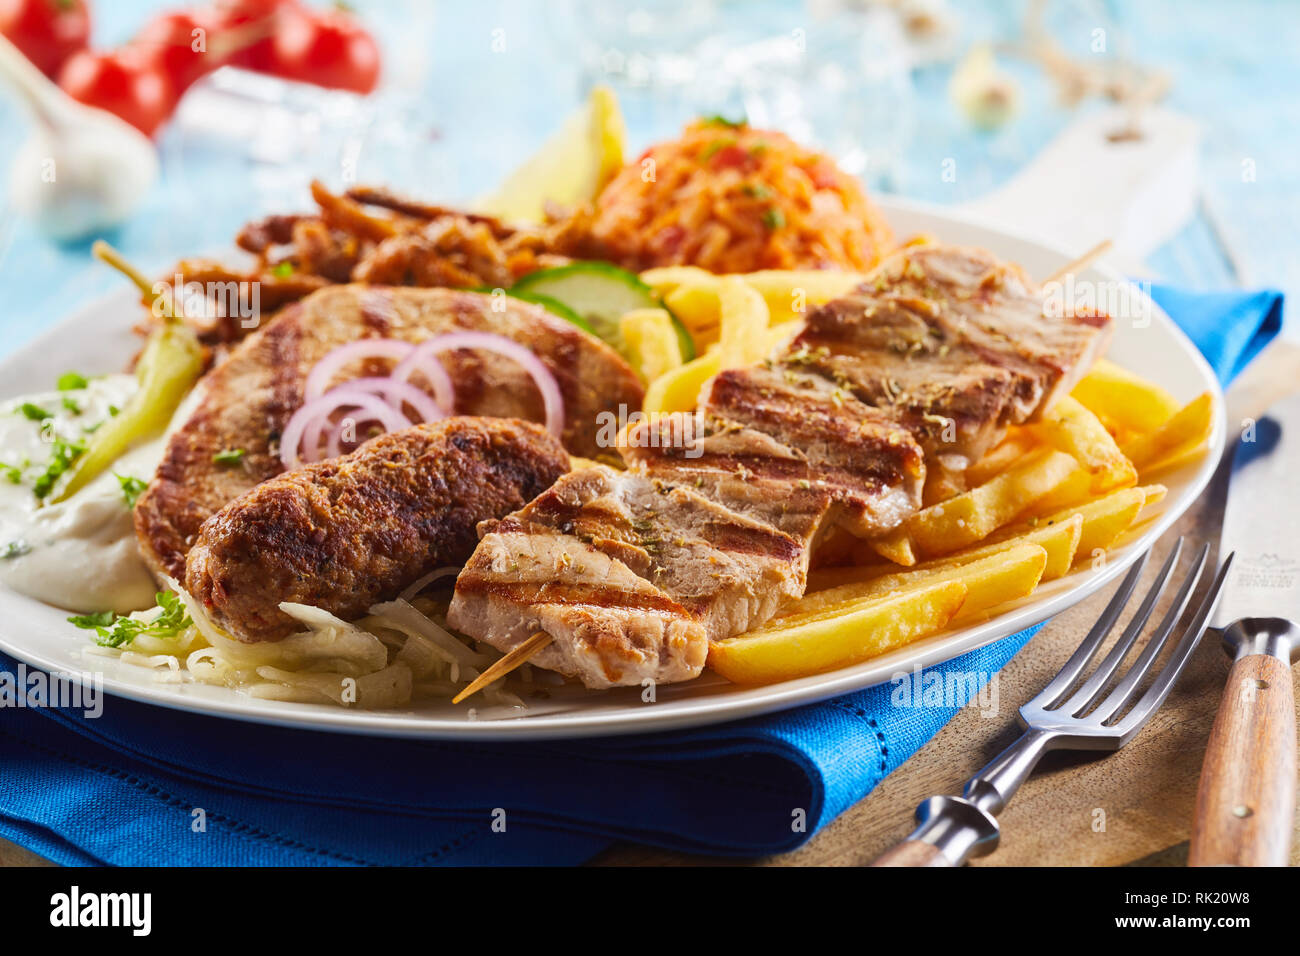 Grigliate di carni assortite su una piastra con fried potato chips, saporita, riso, insalata e anelli di cipolla per una gustosa cena greca in una vista ravvicinata Foto Stock